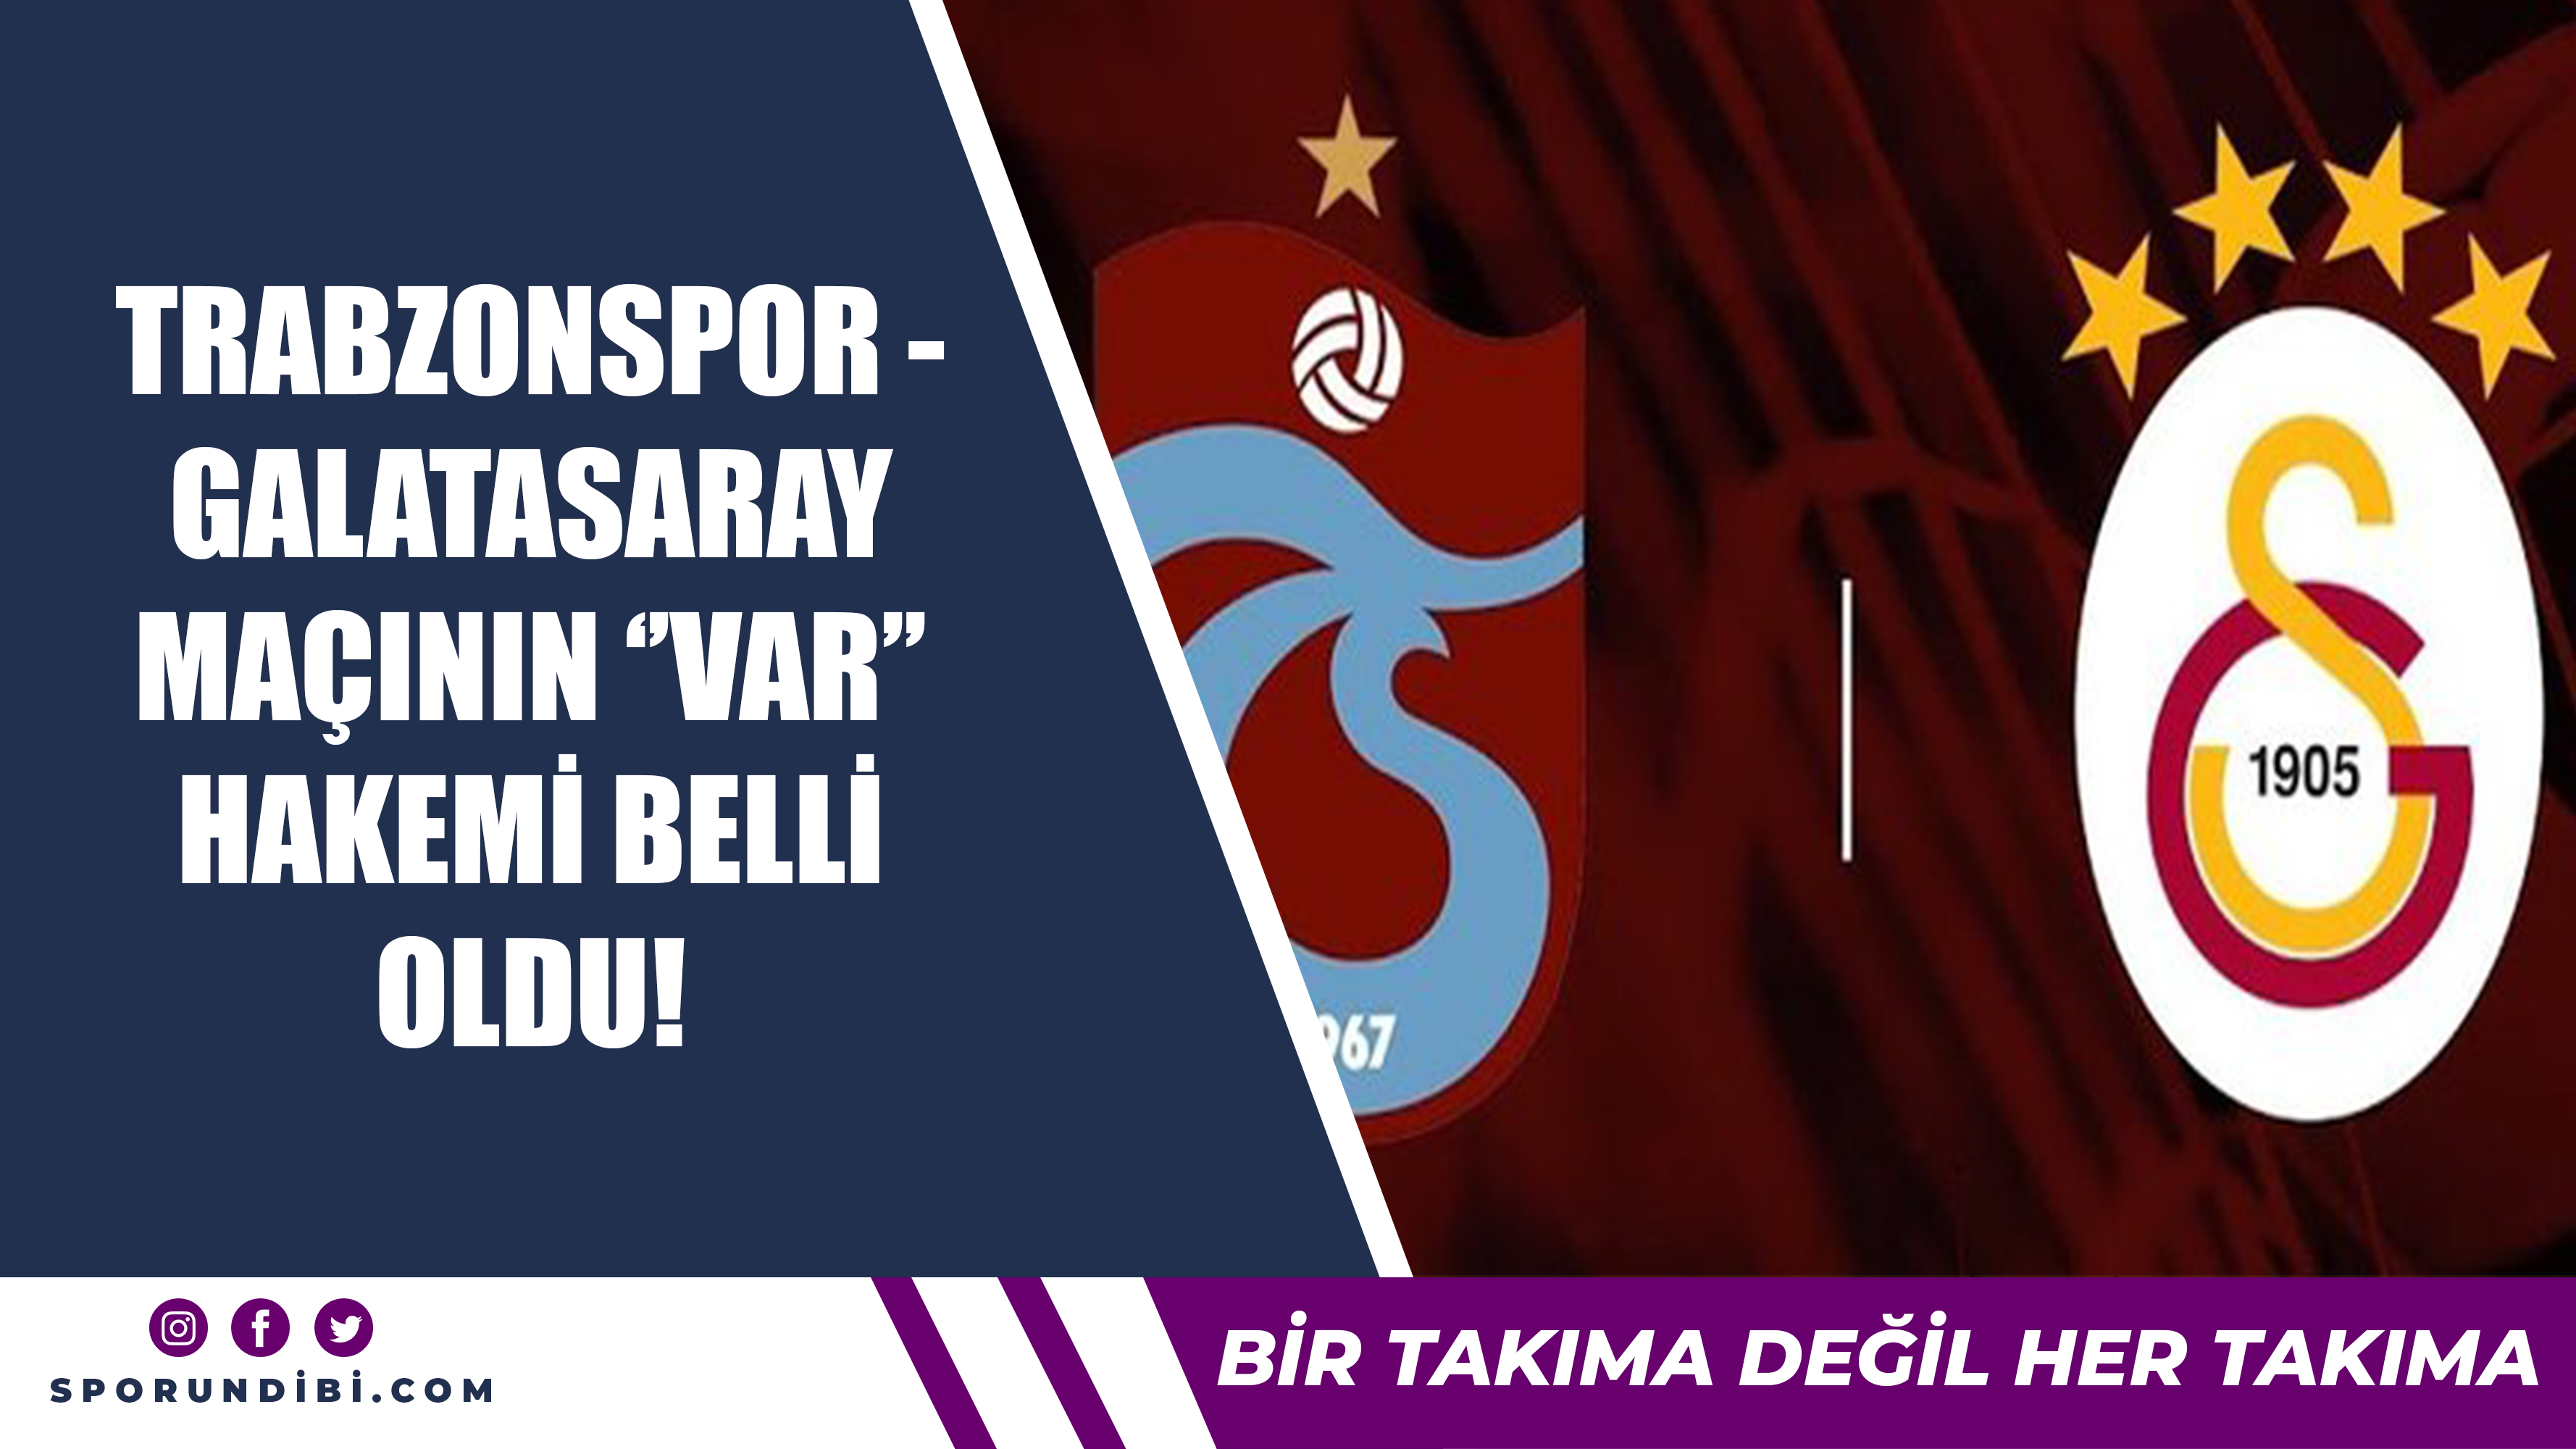 Trabzonspor - Galatasaray maçının VAR hakemi belli oldu!